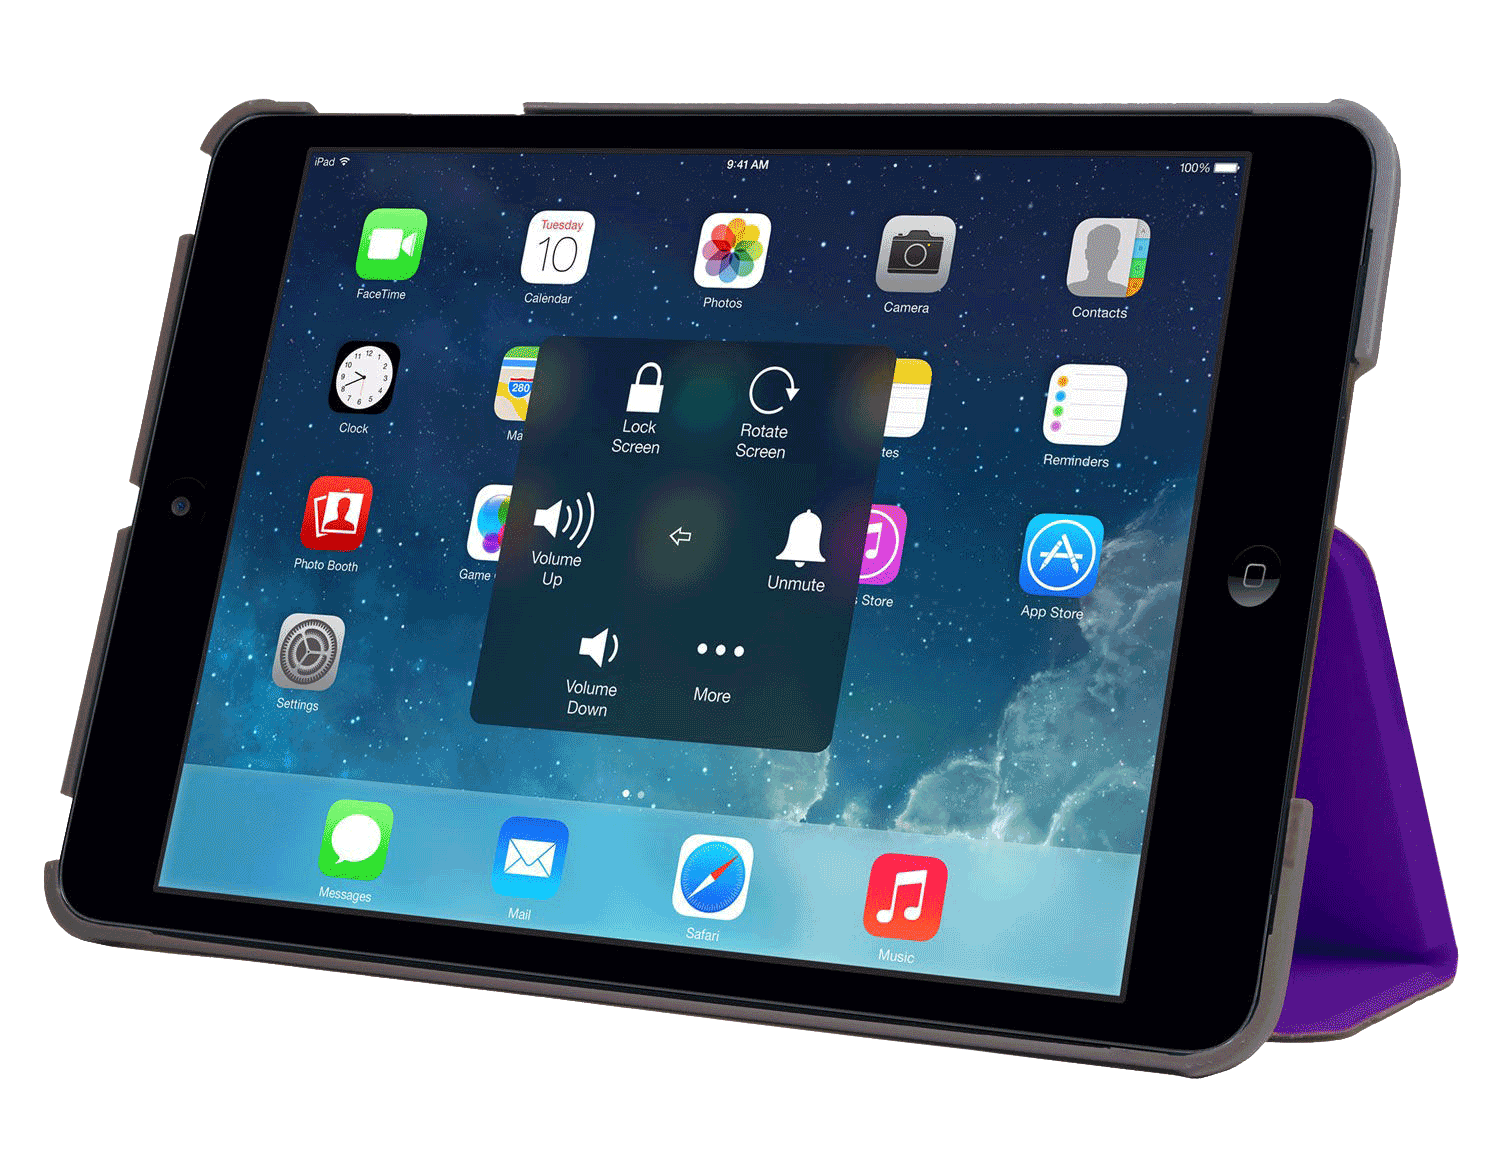 Apple iPad Mini 2 Retina: características y valoraciones | Computer Hoy